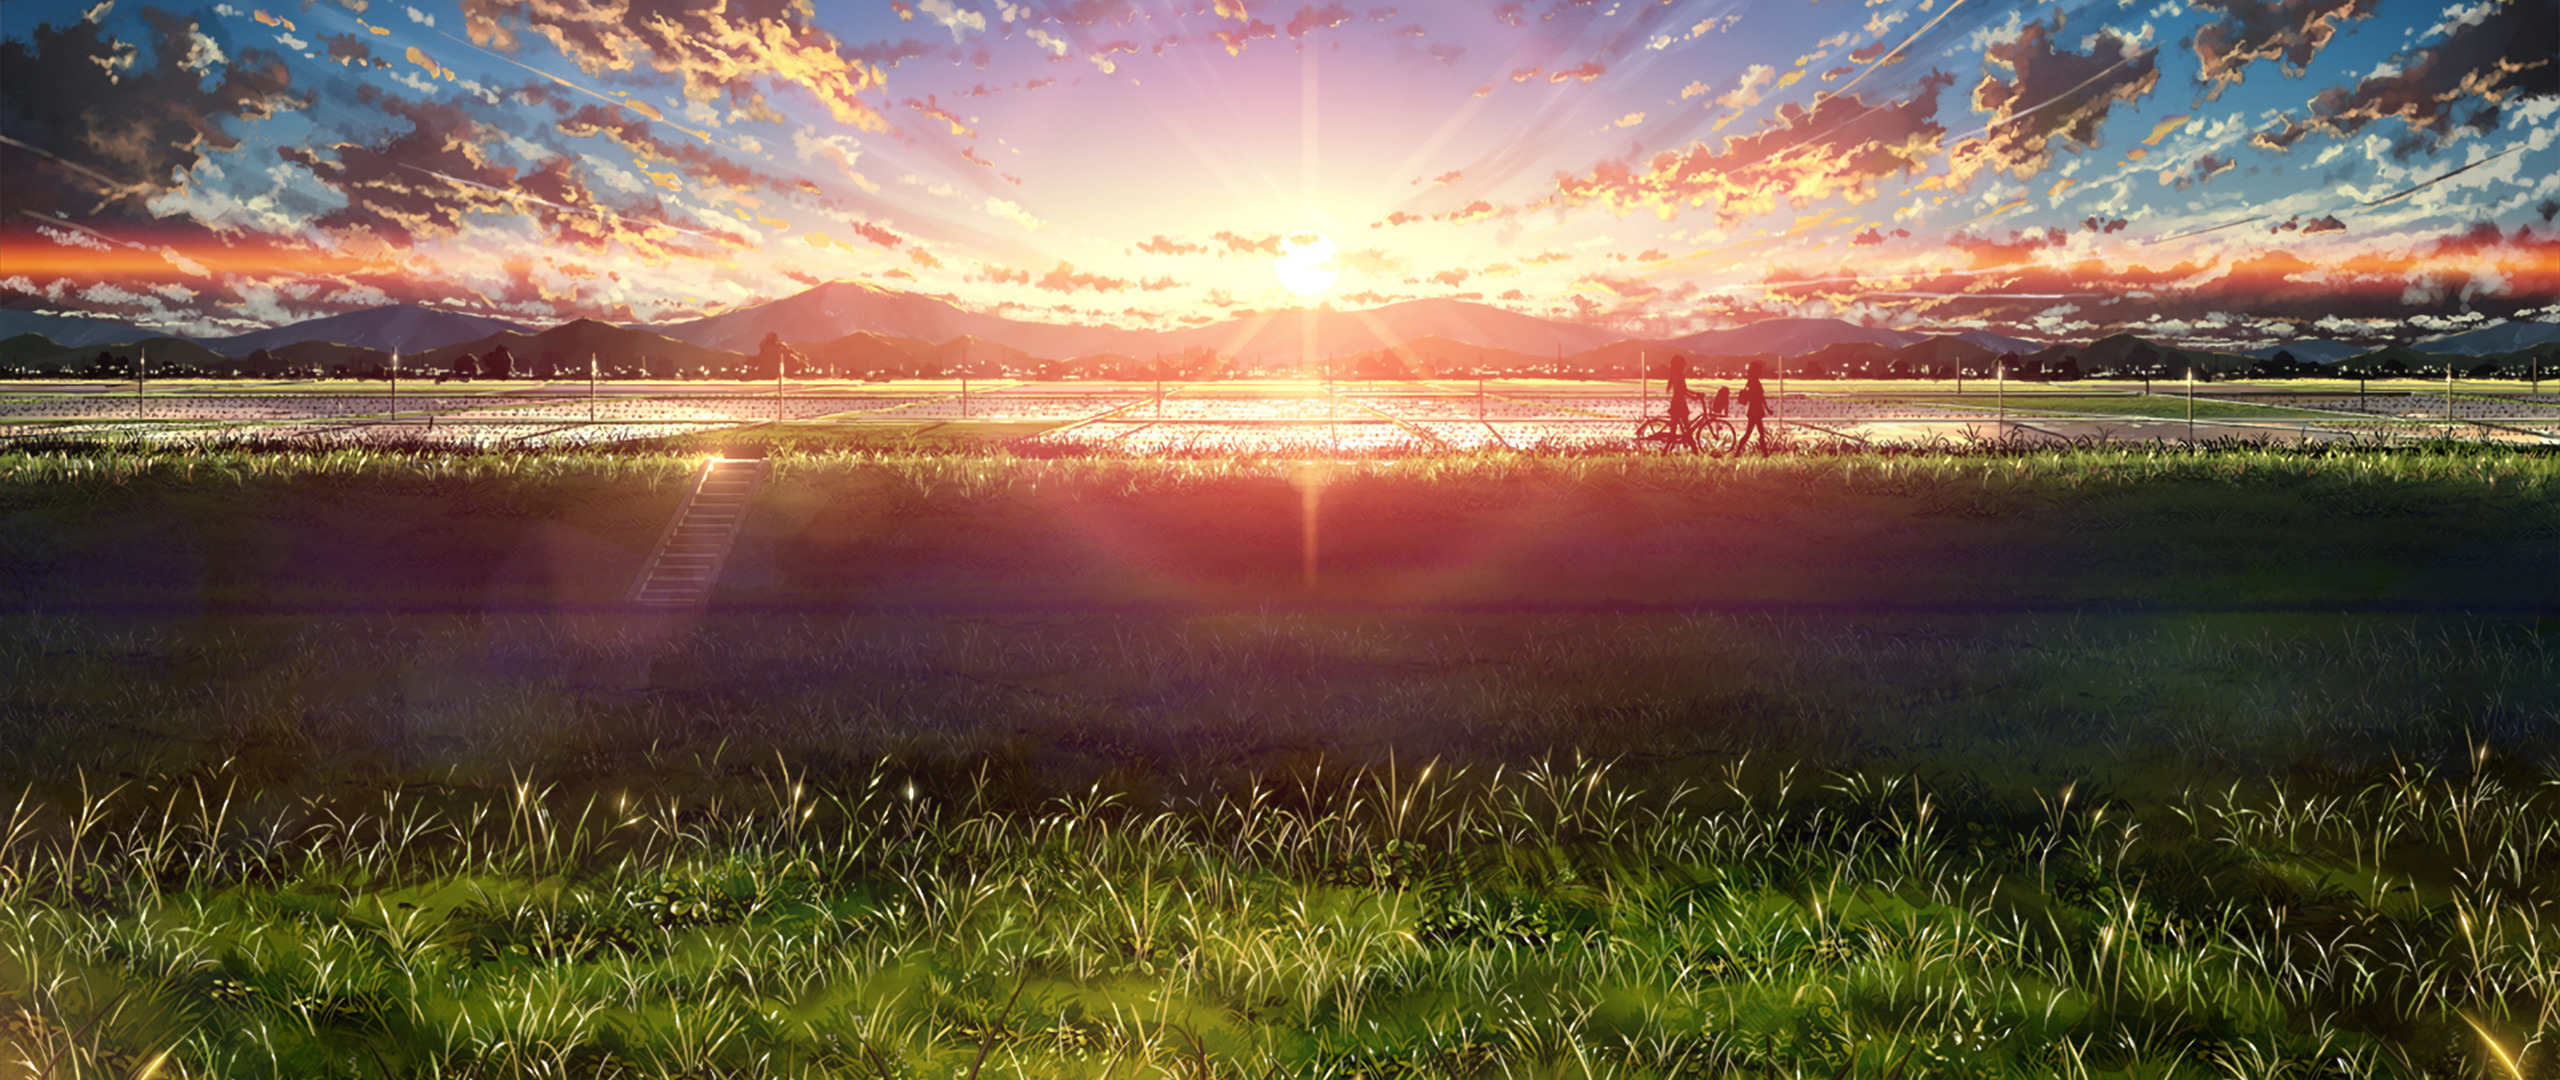 ultra wide, Japan, Anime, Sky, Sunlight Wallpapers HD ...